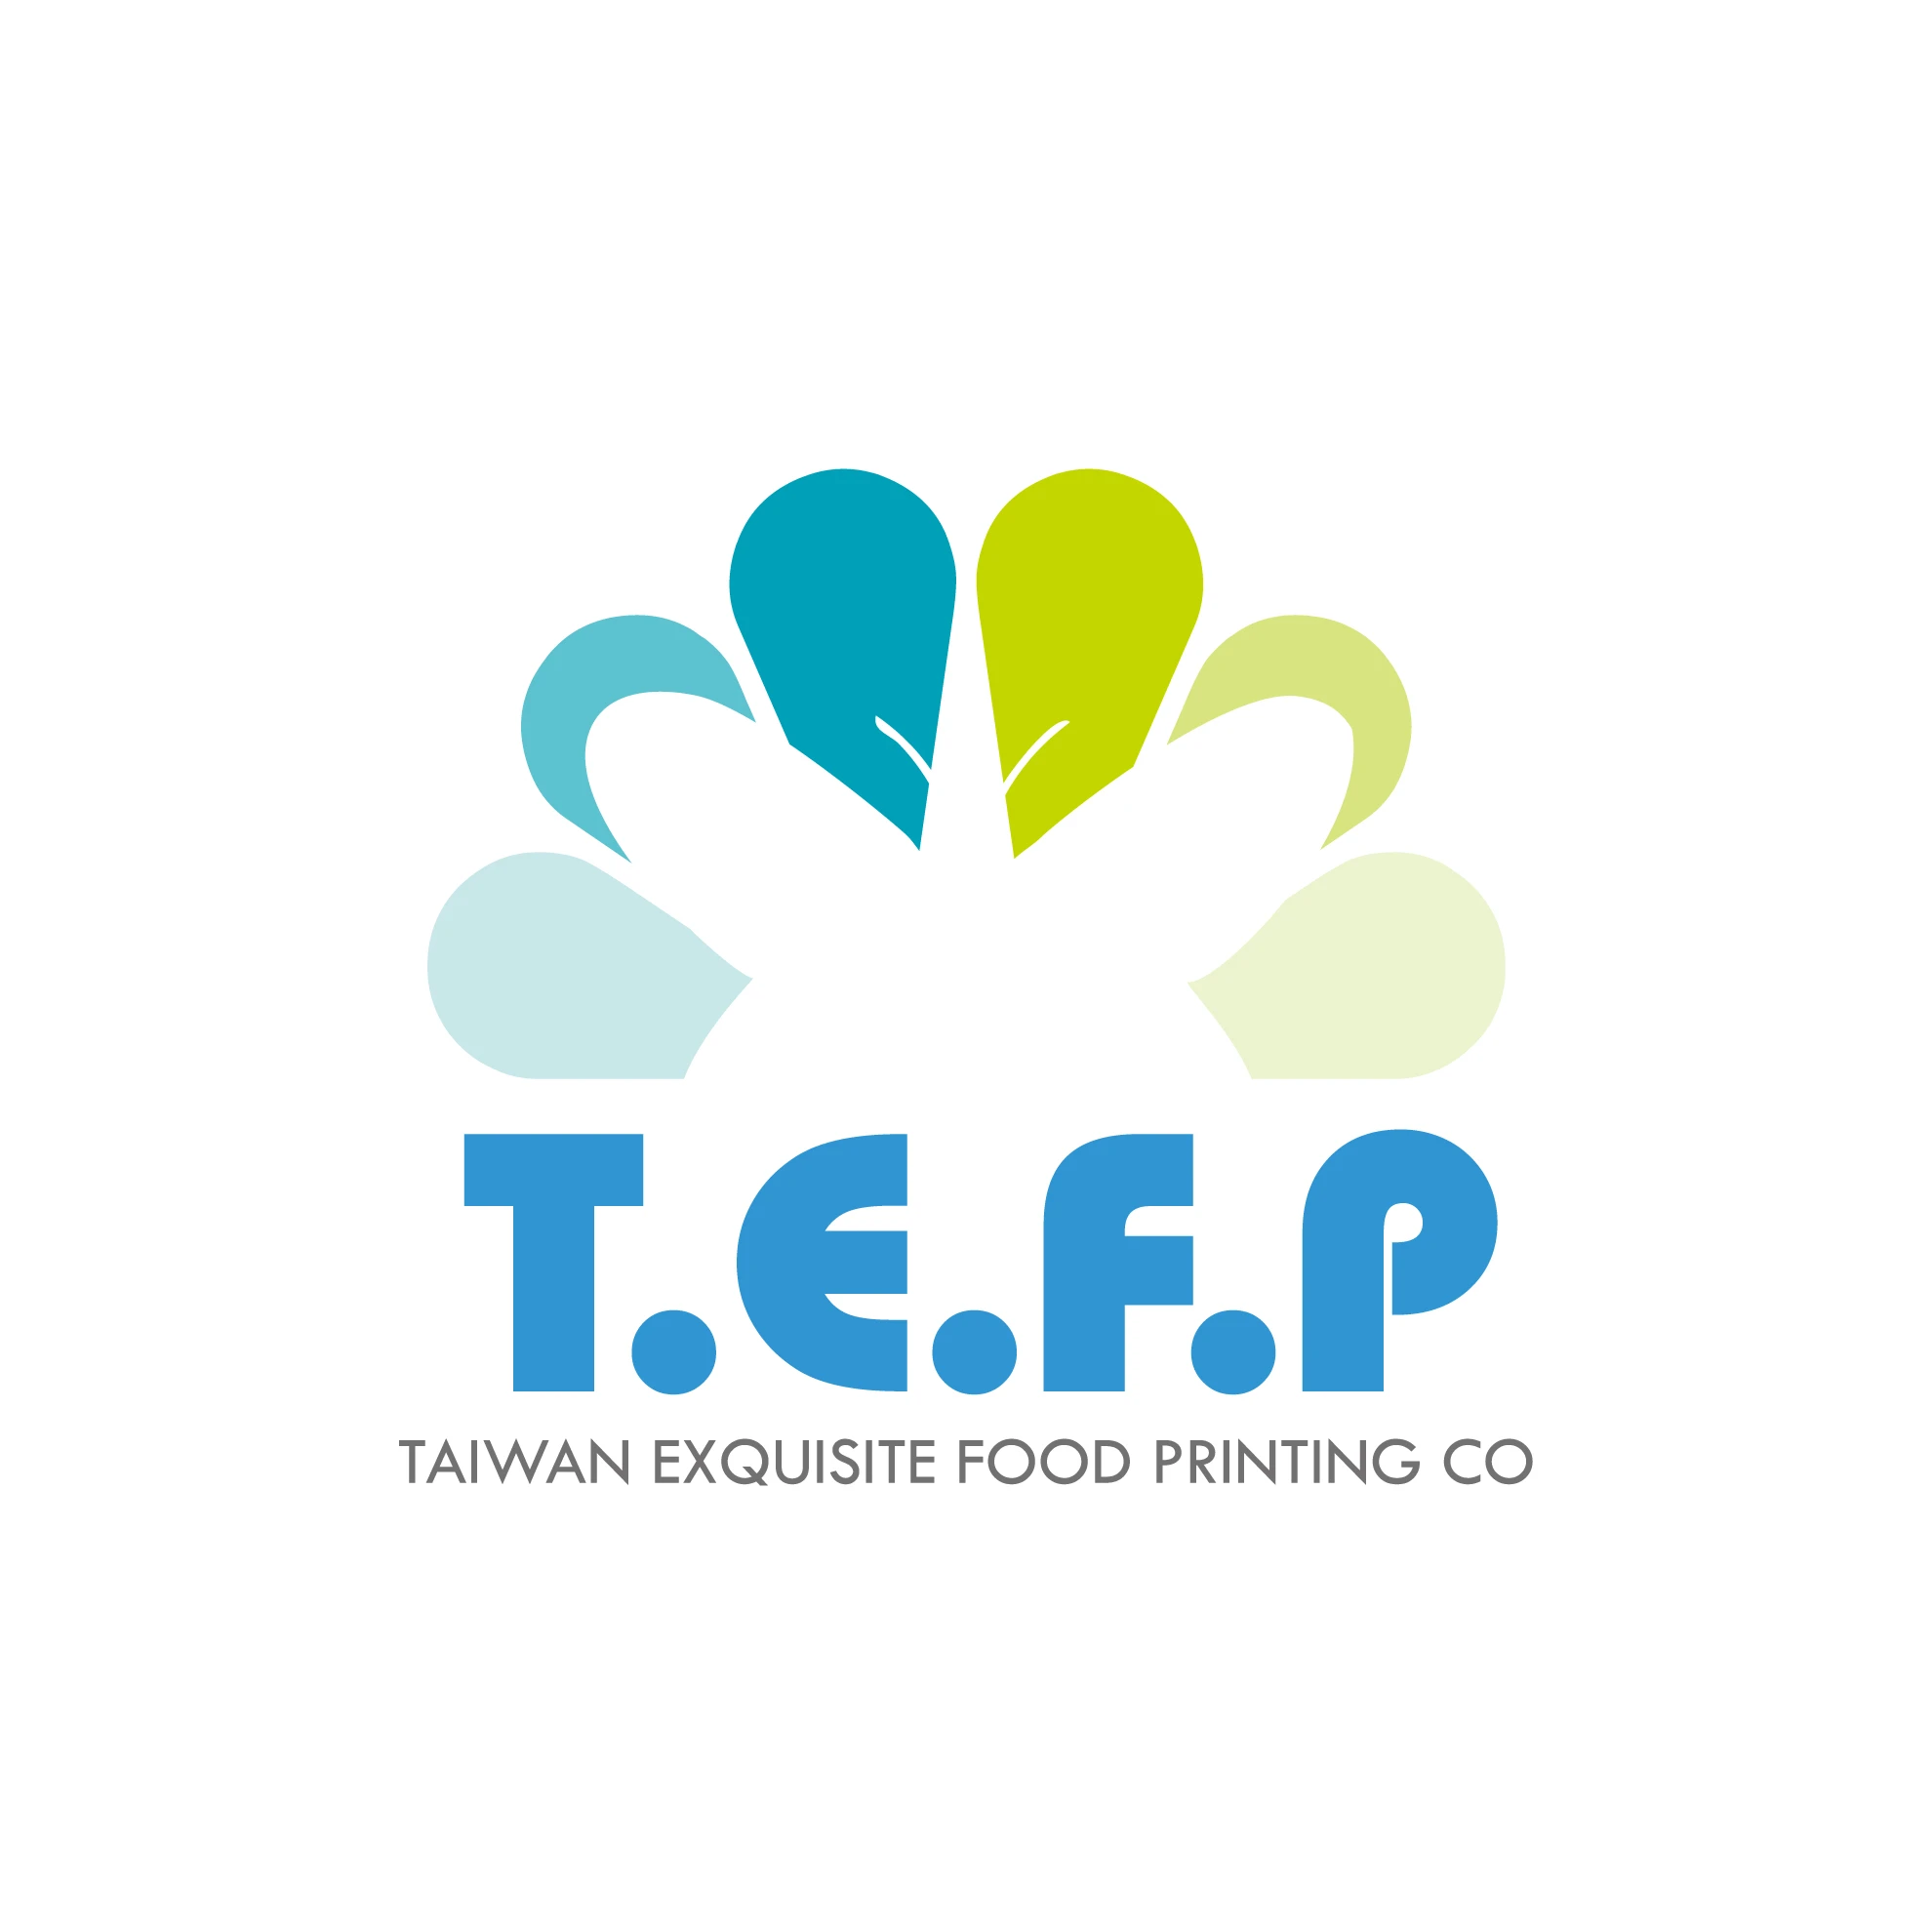 關於台灣食印1